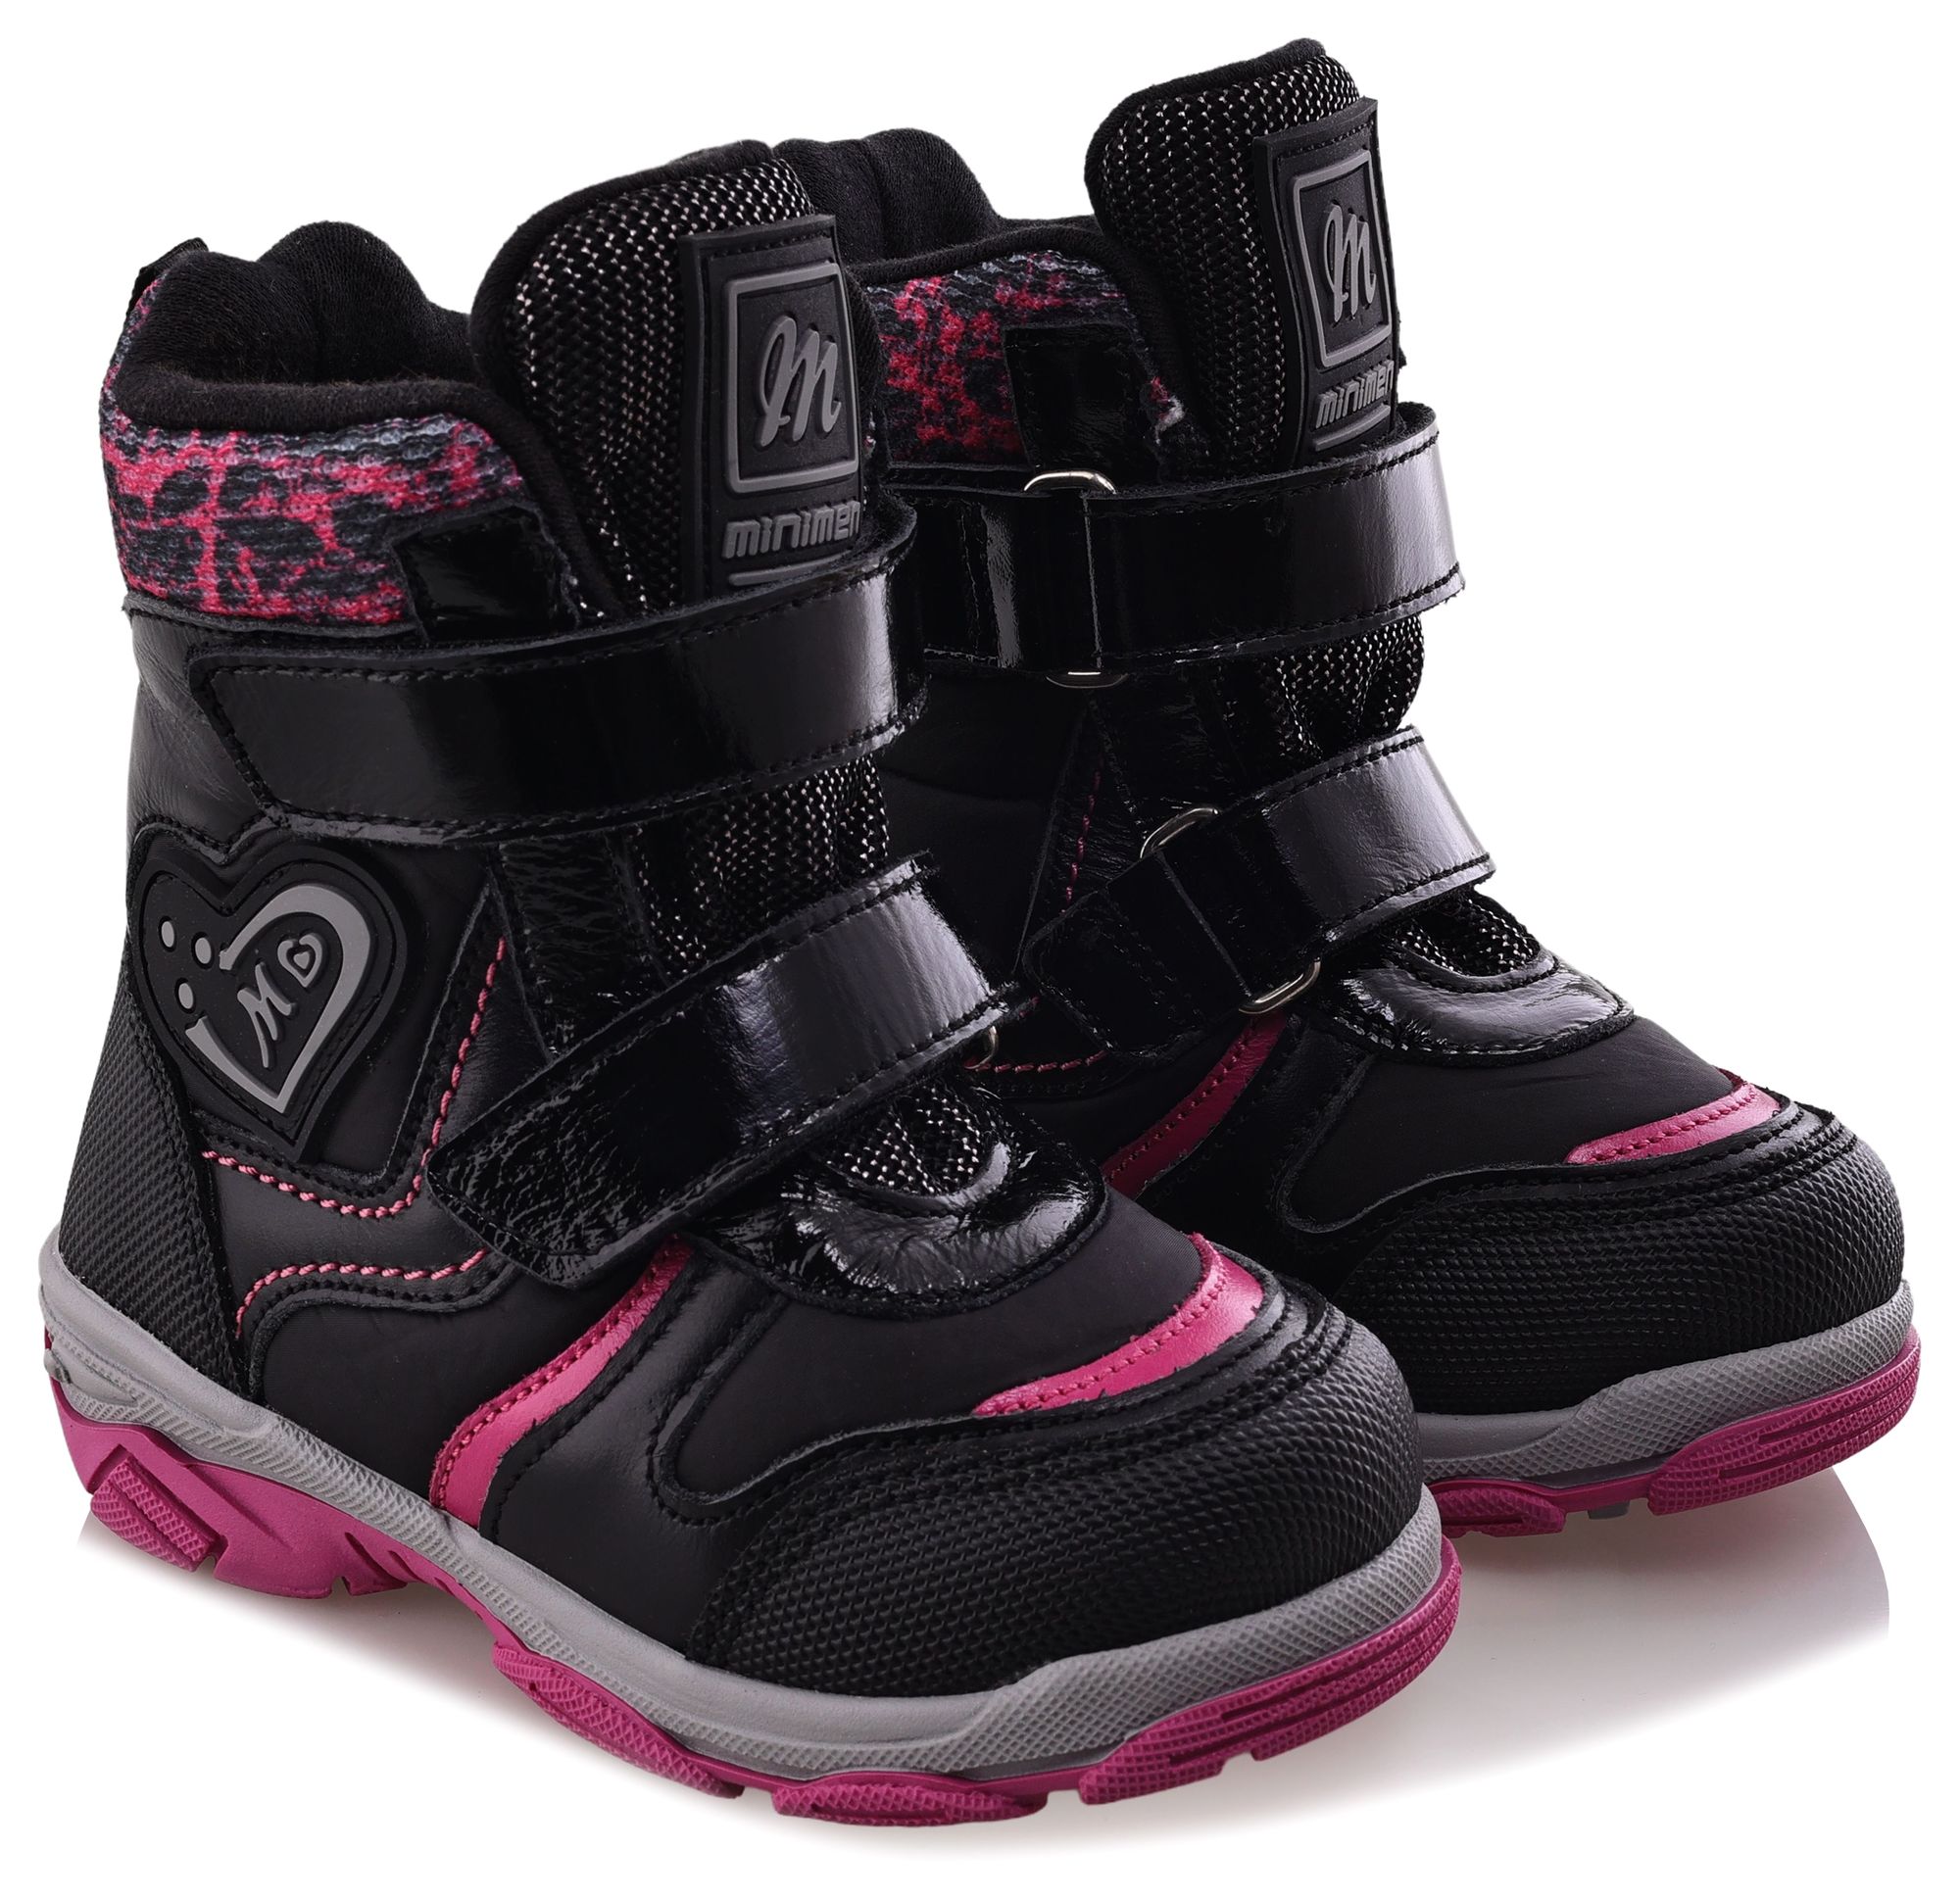 Ботинки Minimen для девочек, чёрные, размер 26, 2656-53-23B-01 ботинки minimen для девочек розовые размер 30 2656 53 23b 02